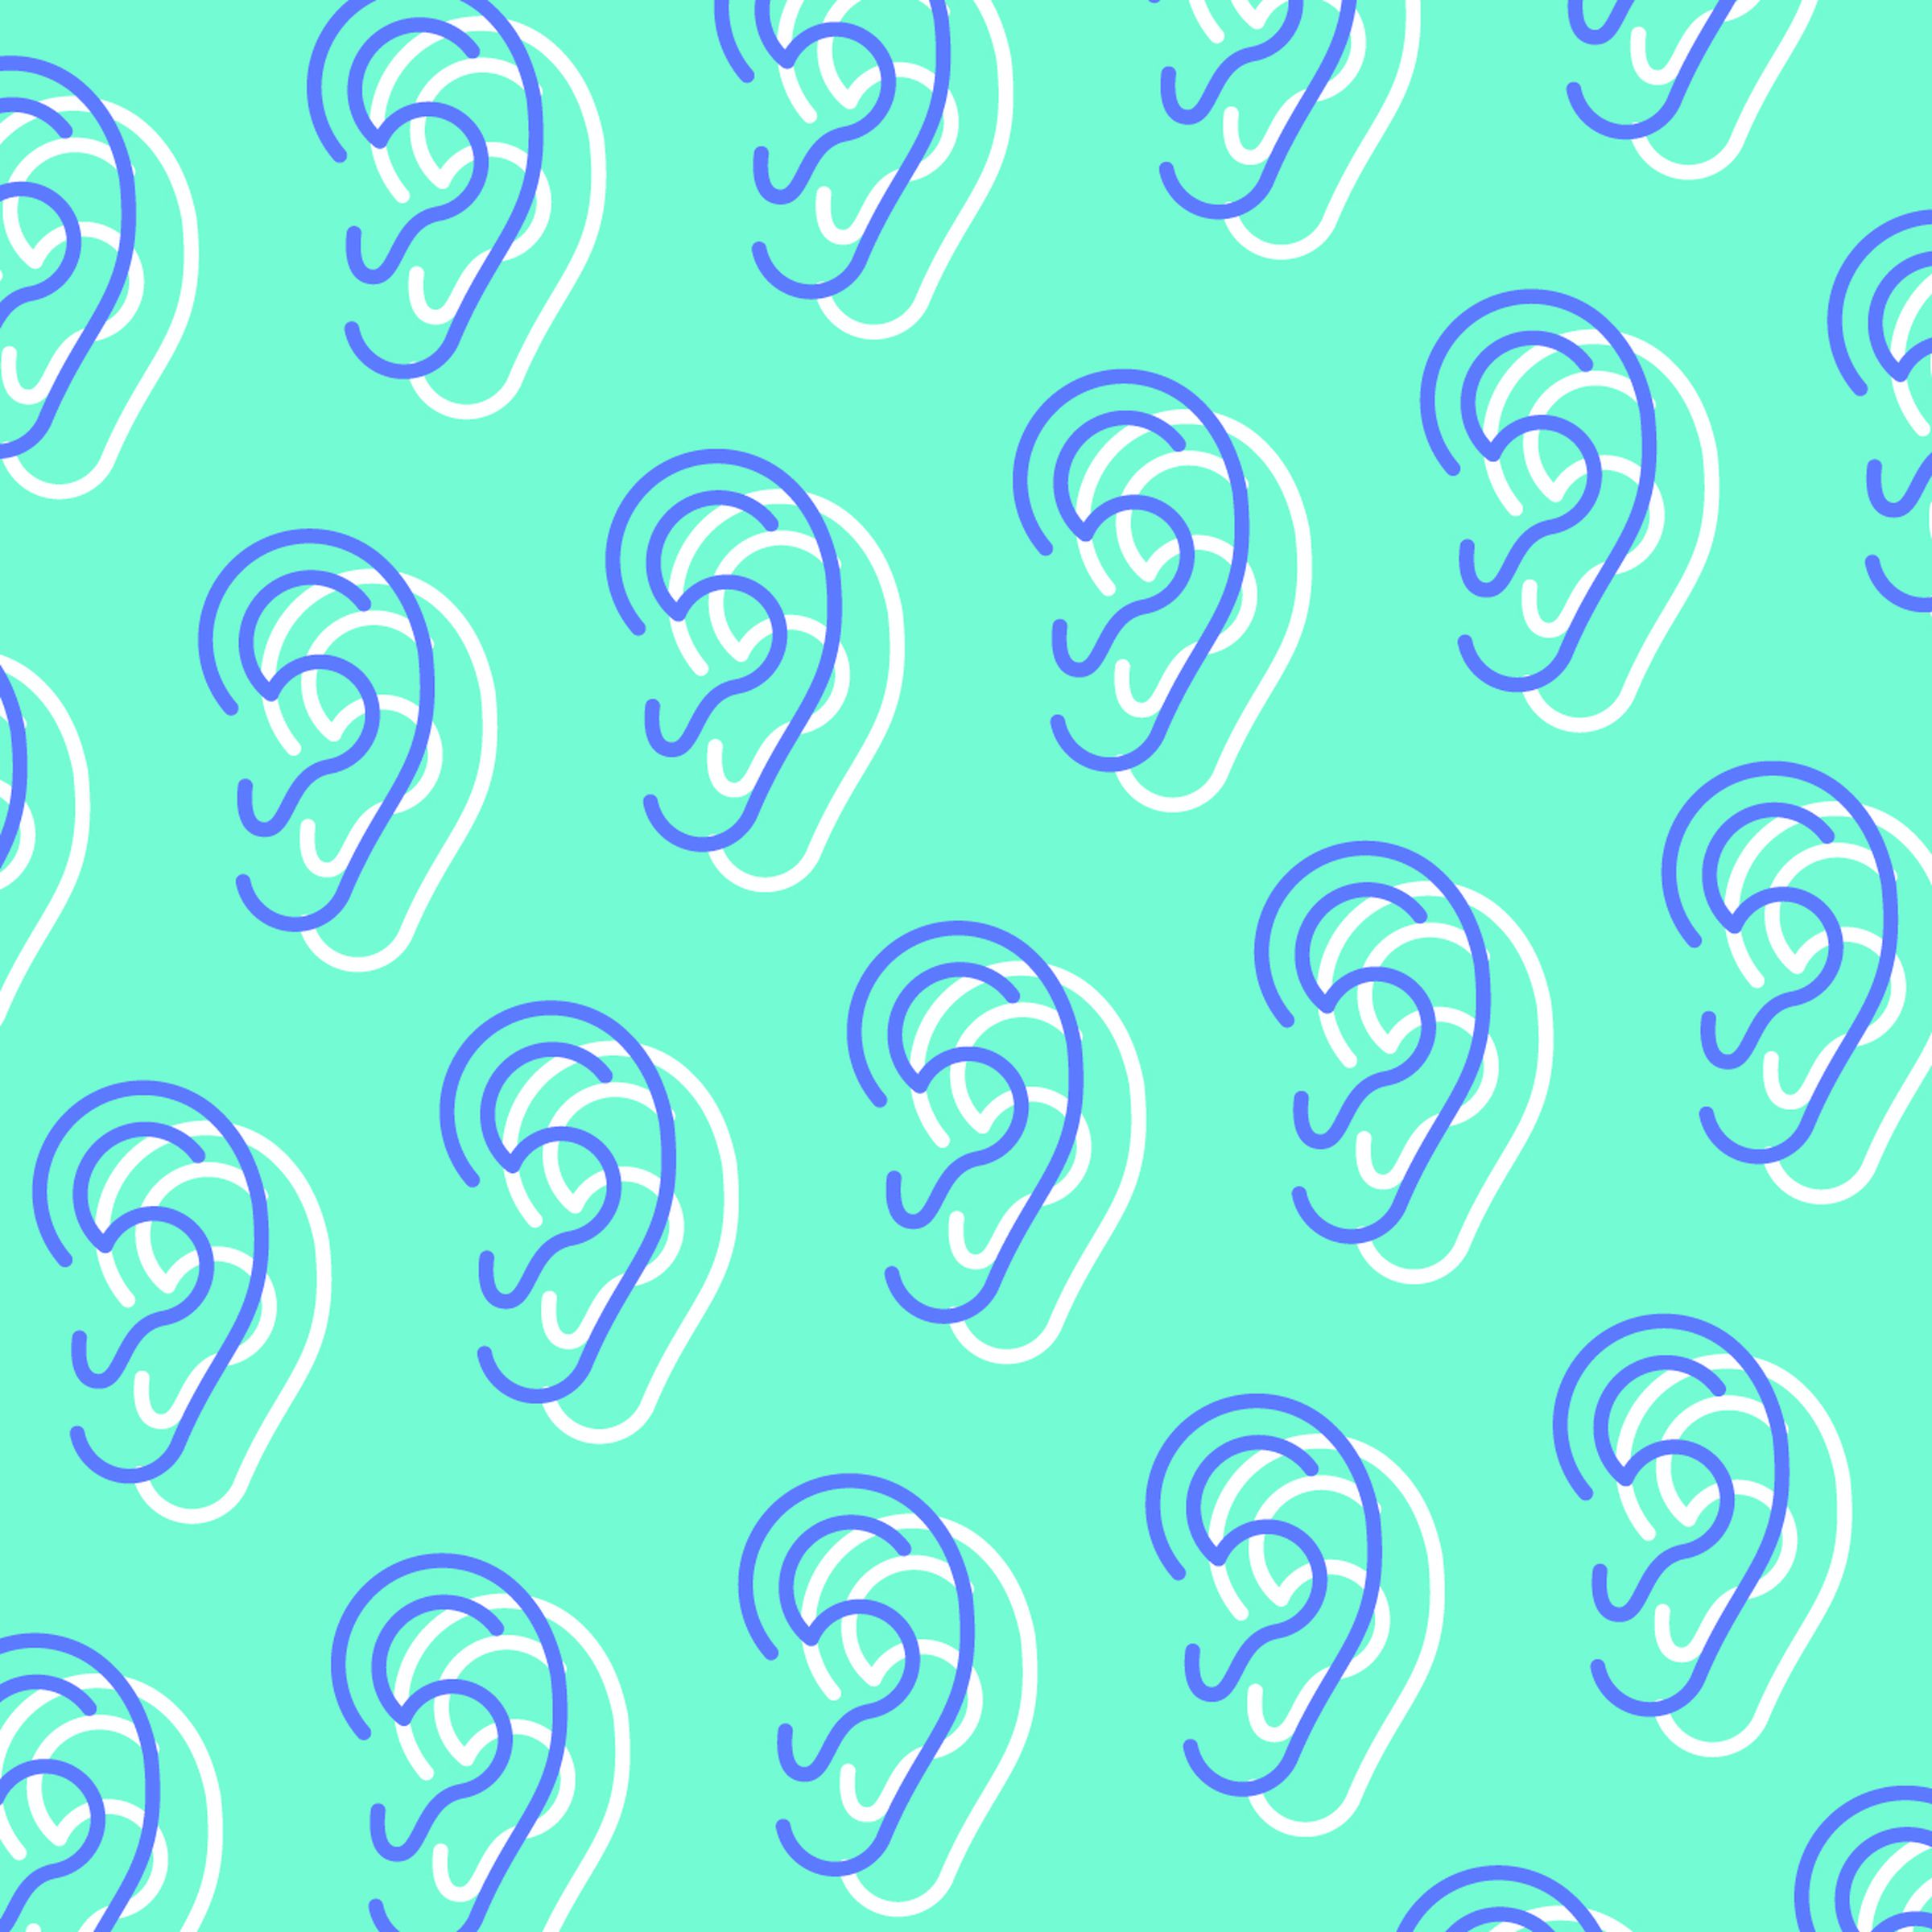 Ear pattern